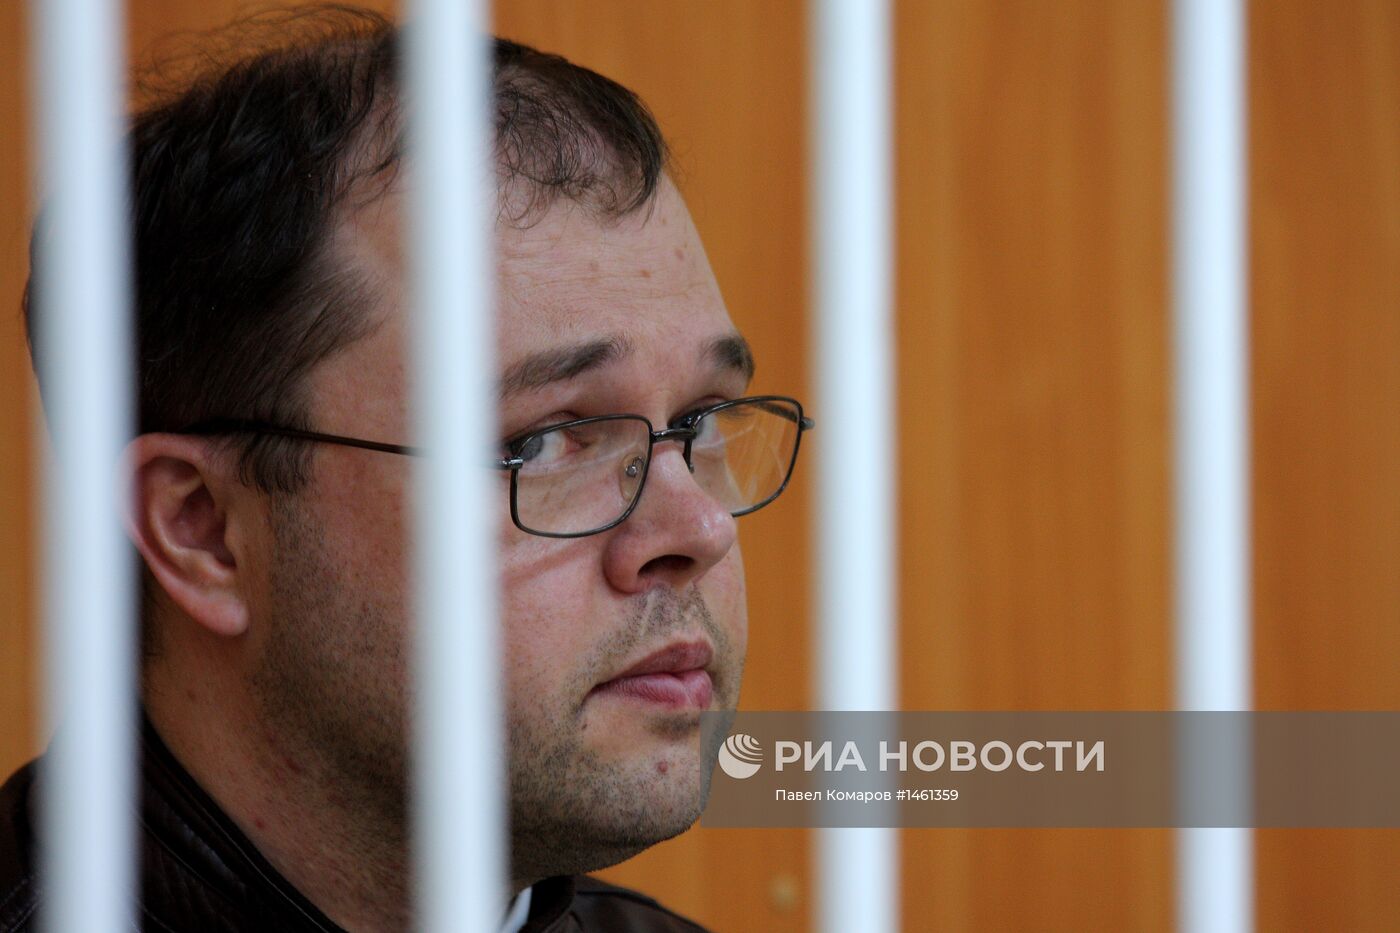 Арестован мэр Бердска И.Потапов, подозреваемый во взятке